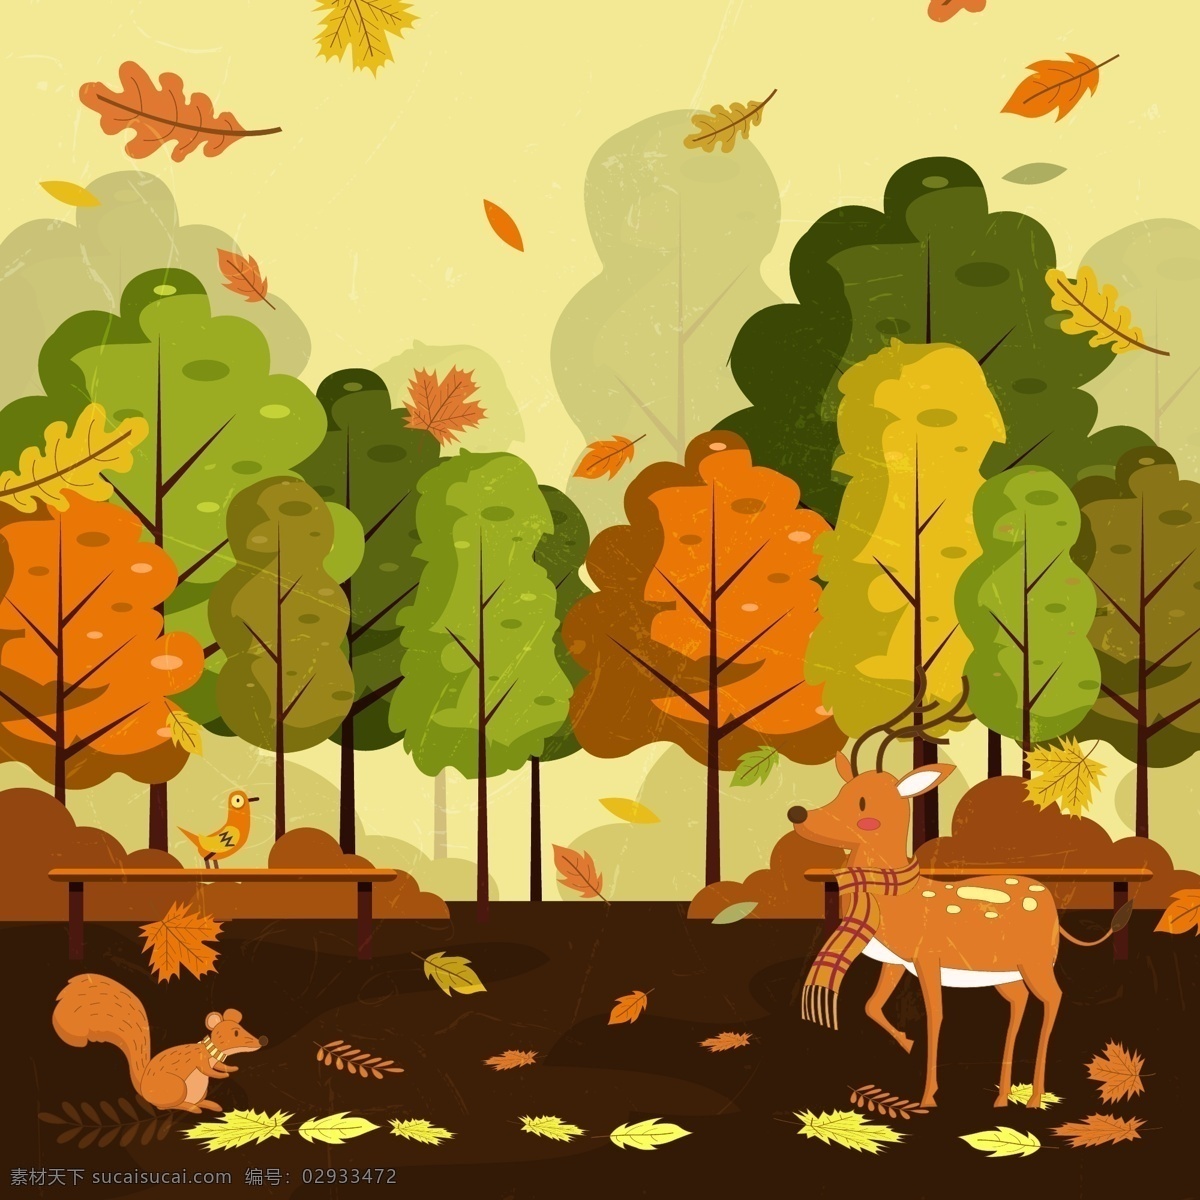 创意秋天 公园里的动物 矢量素材 树叶 落叶 树木 鹿 松鼠 长椅 鸟 灌木 创意 秋季 公园 动物 矢量图 ai格式 自然风景